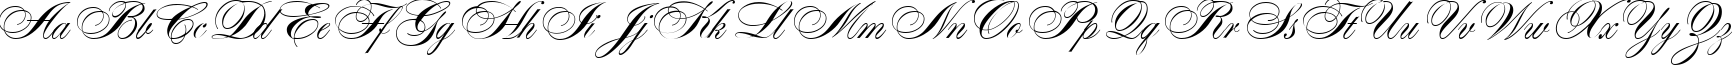 Пример написания английского алфавита шрифтом Alexandra Script